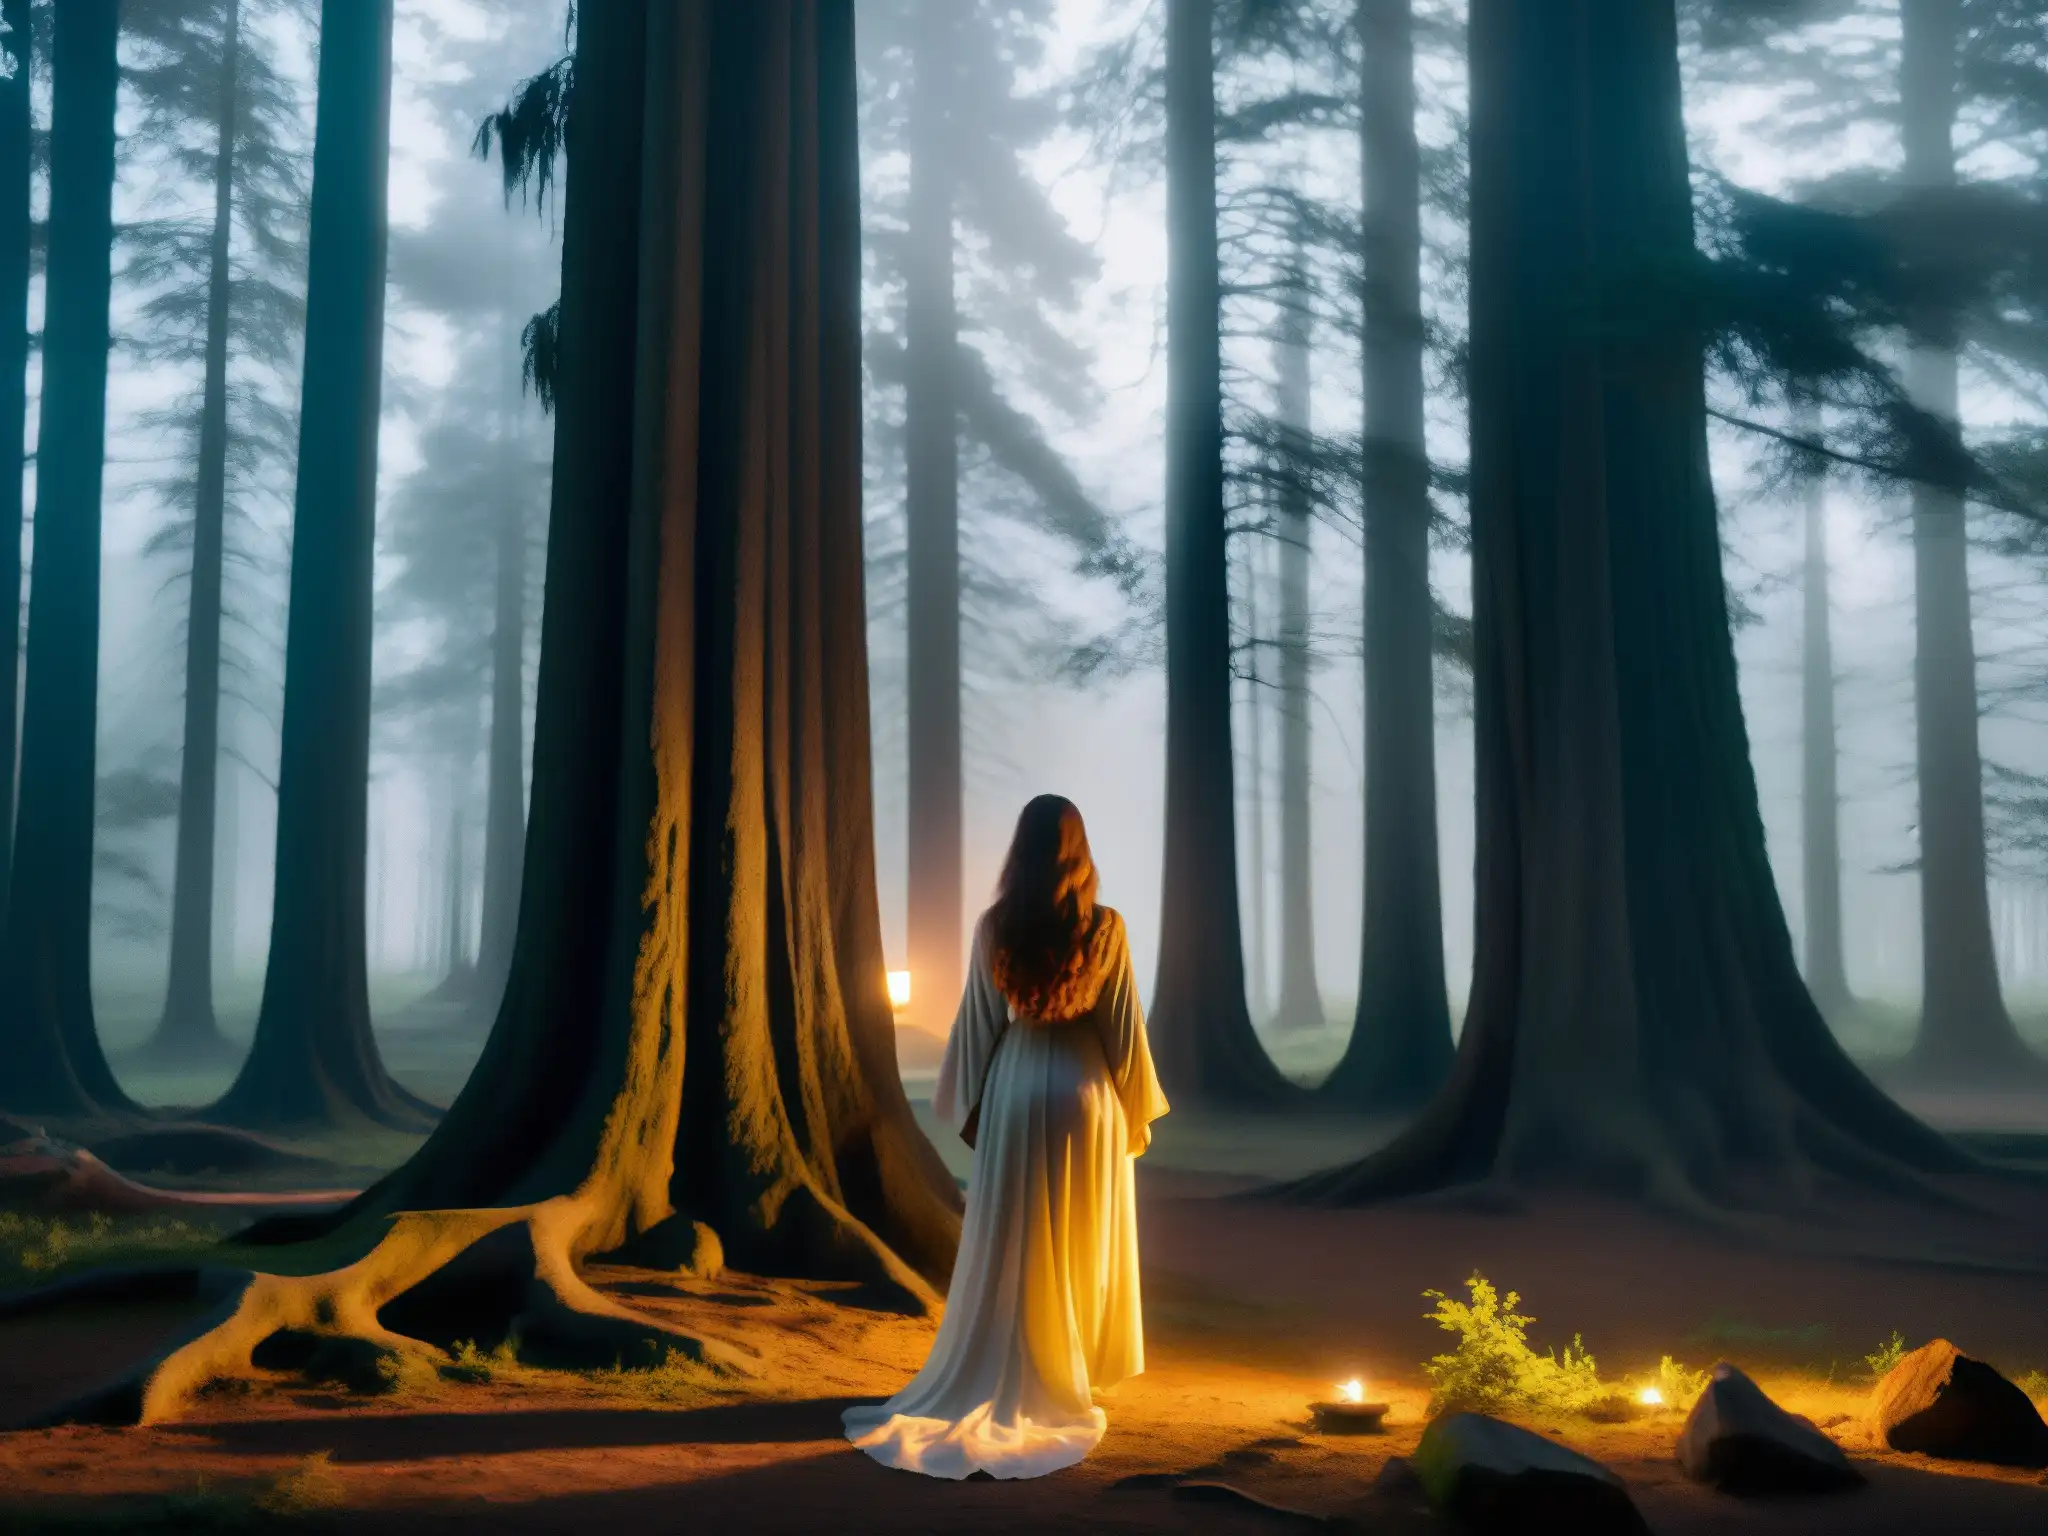 En el bosque oscuro al anochecer, aparece la Mulánima: leyenda alma errante mujer, con su presencia misteriosa y sobrenatural